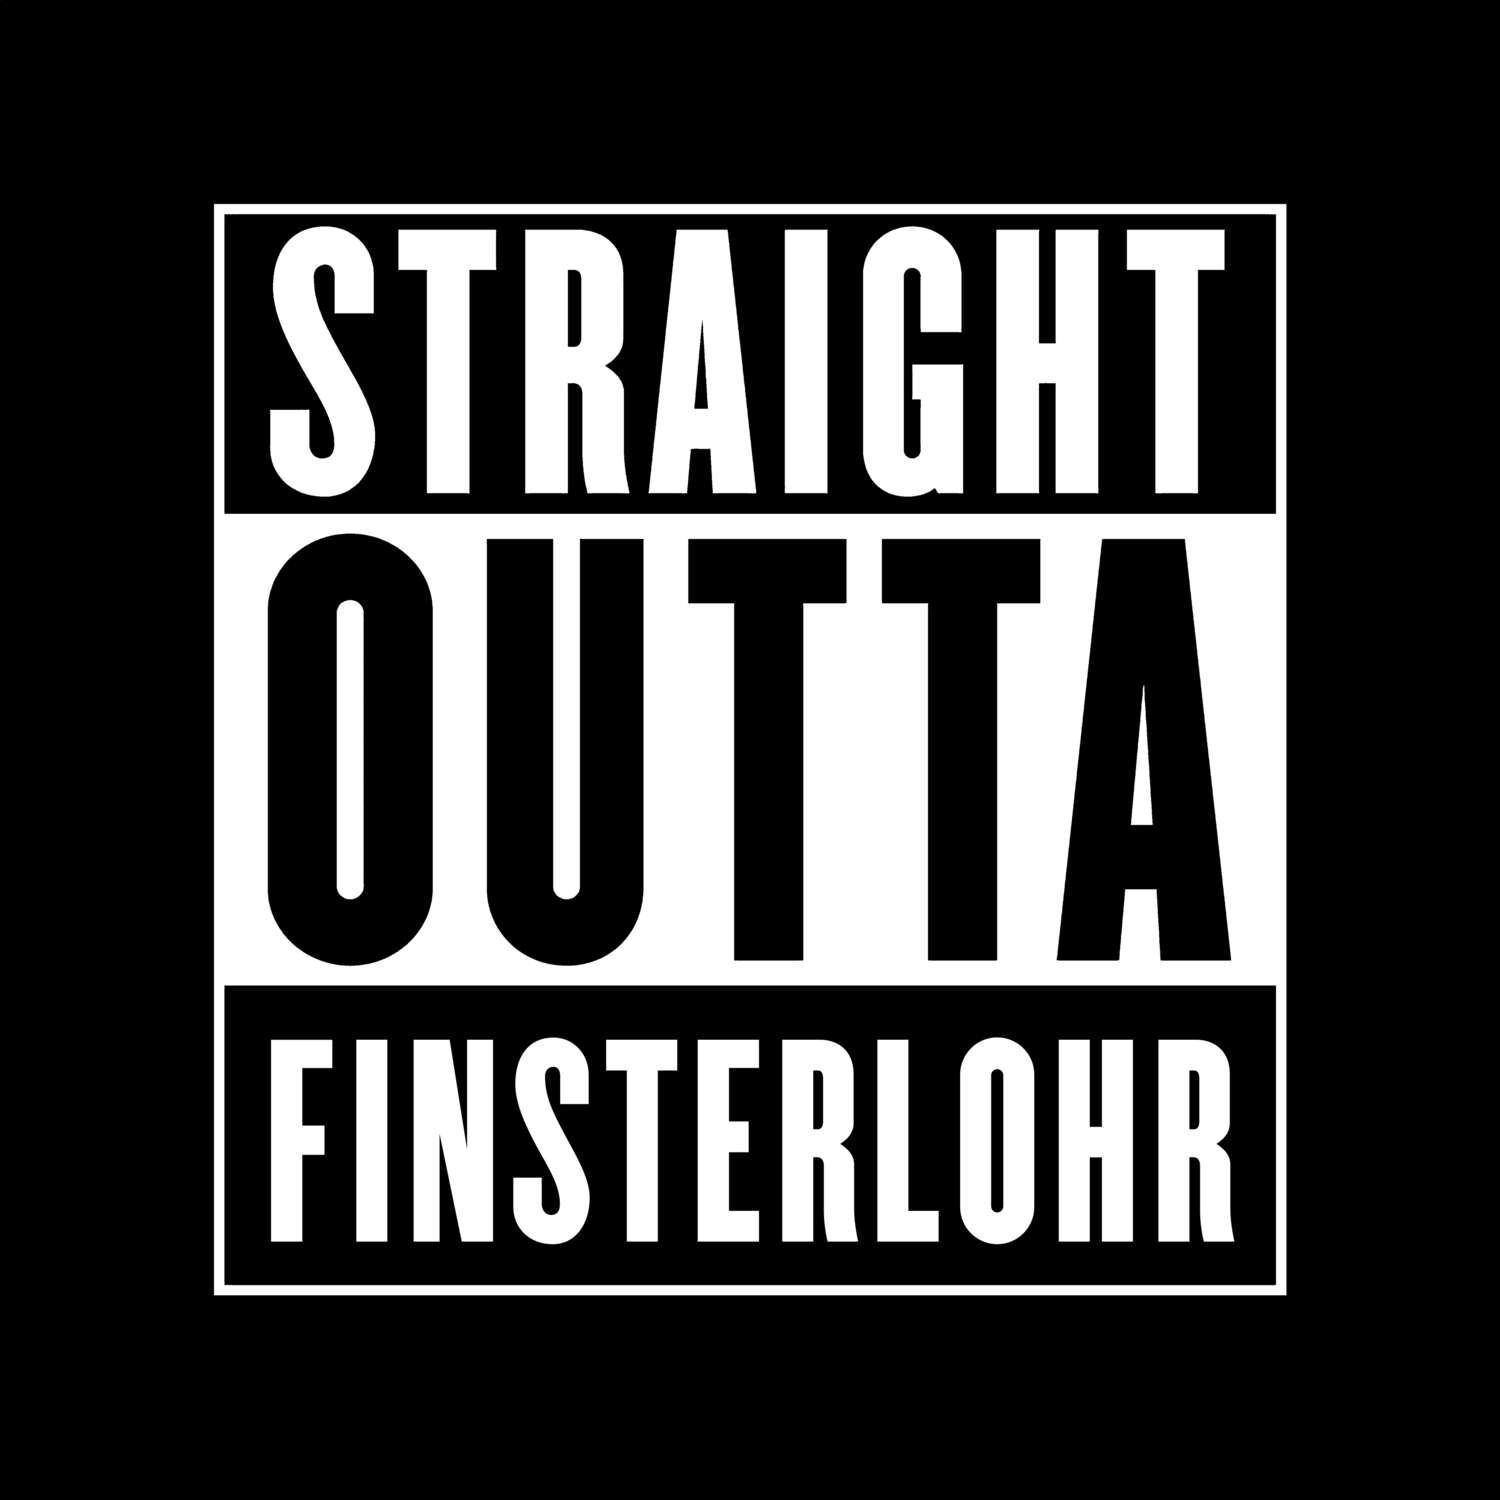 Finsterlohr T-Shirt »Straight Outta«